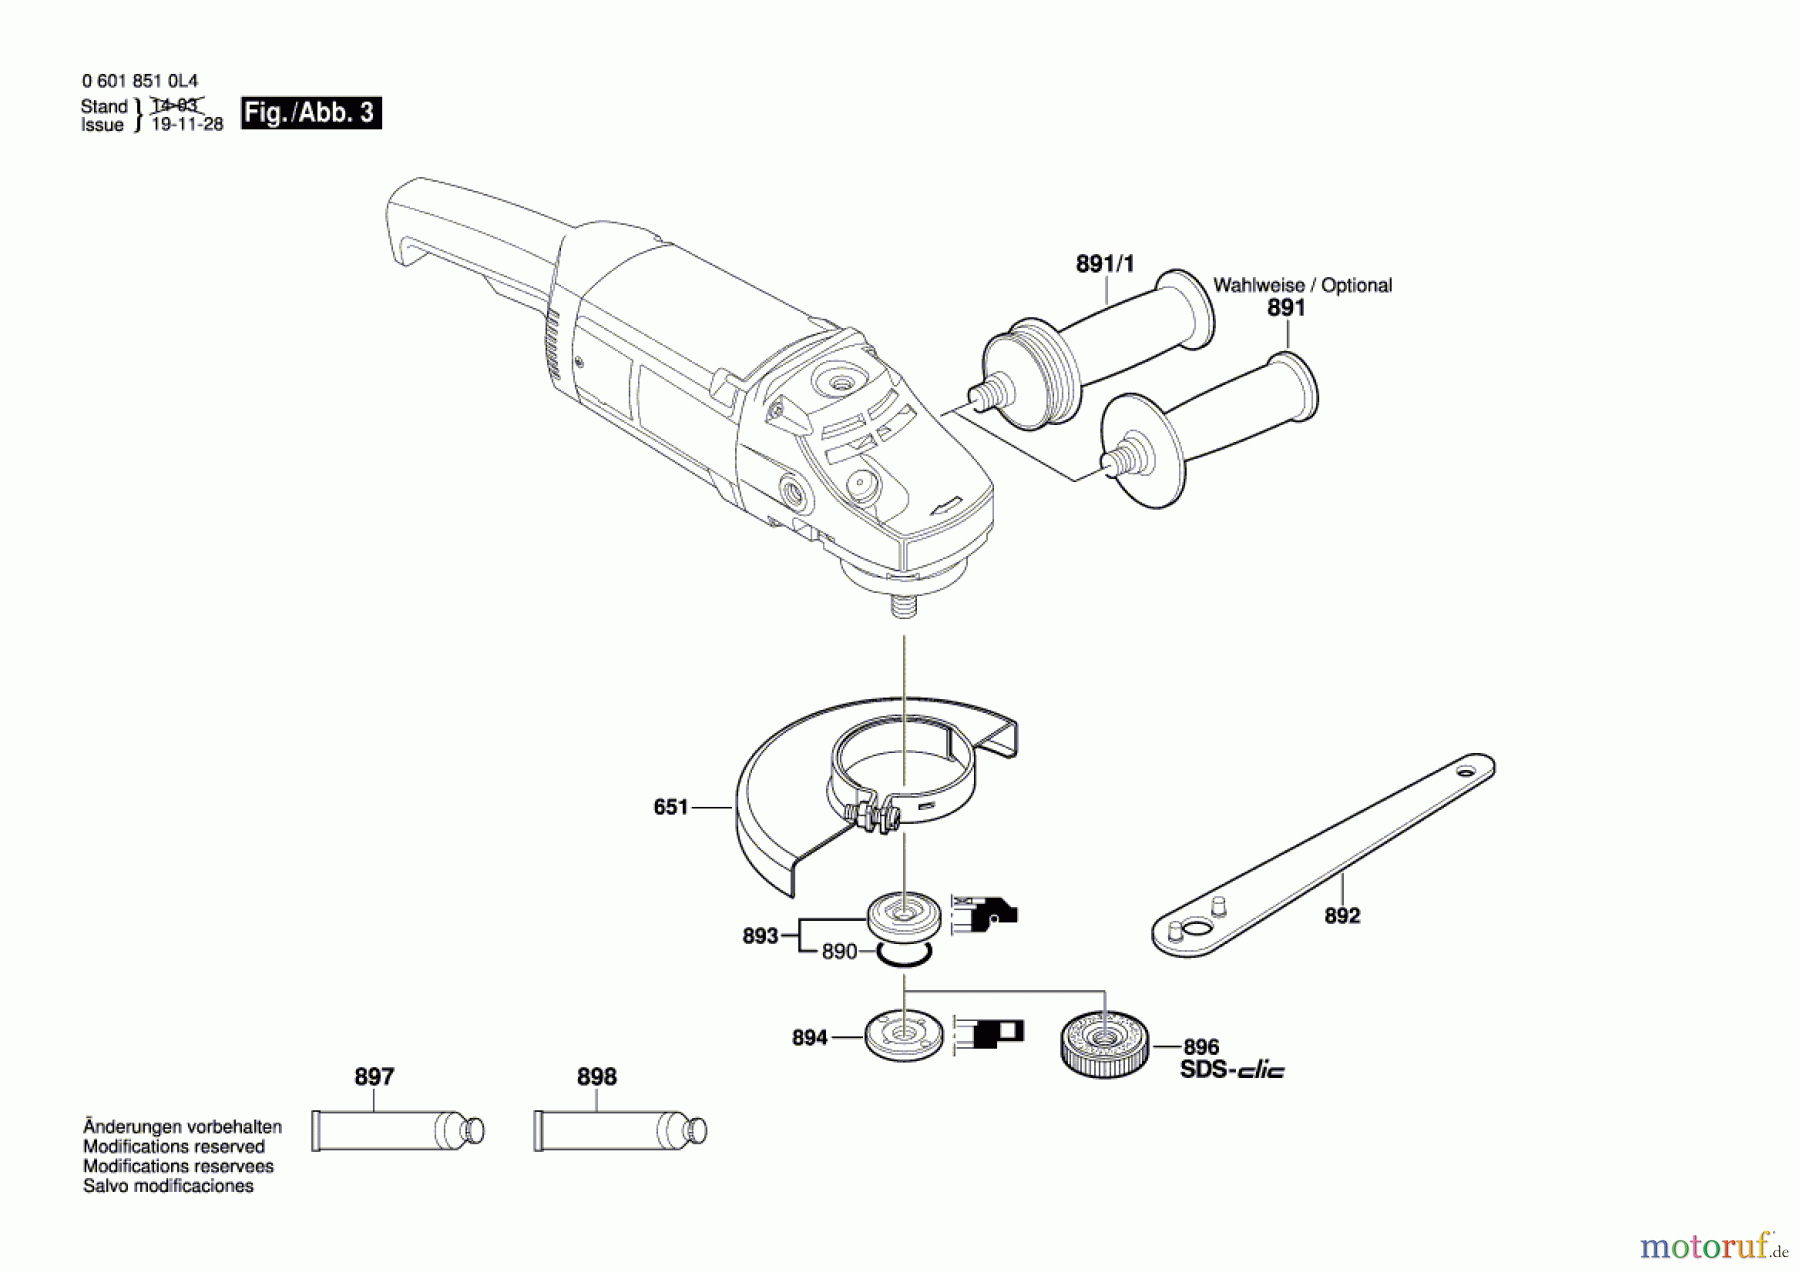  Bosch Werkzeug Winkelschleifer GWS 21-180 H Seite 3